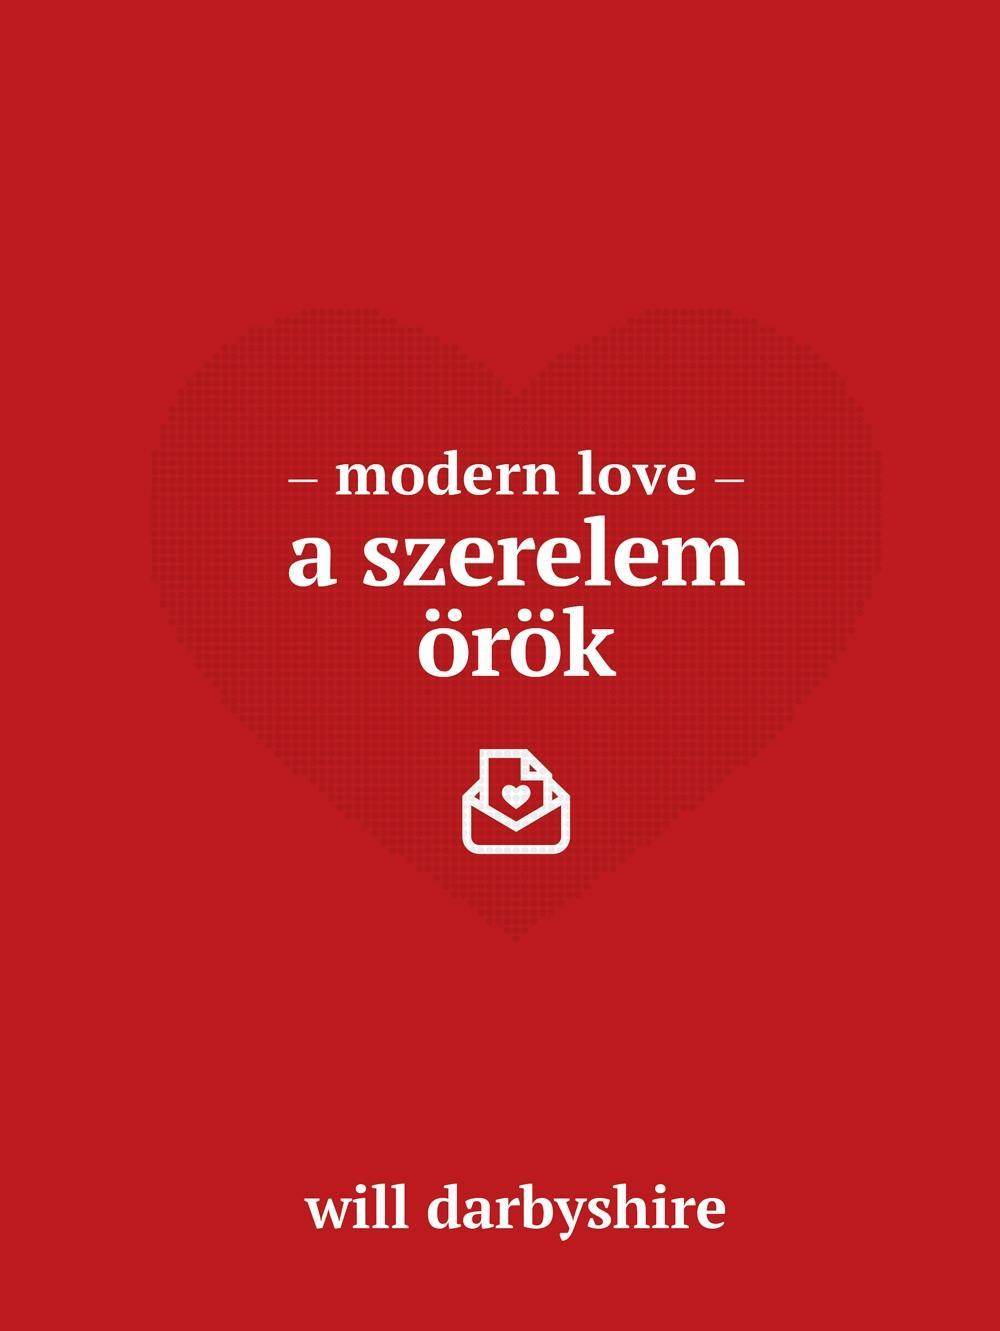 MODERN LOVE - A SZERELEM ÖRÖK